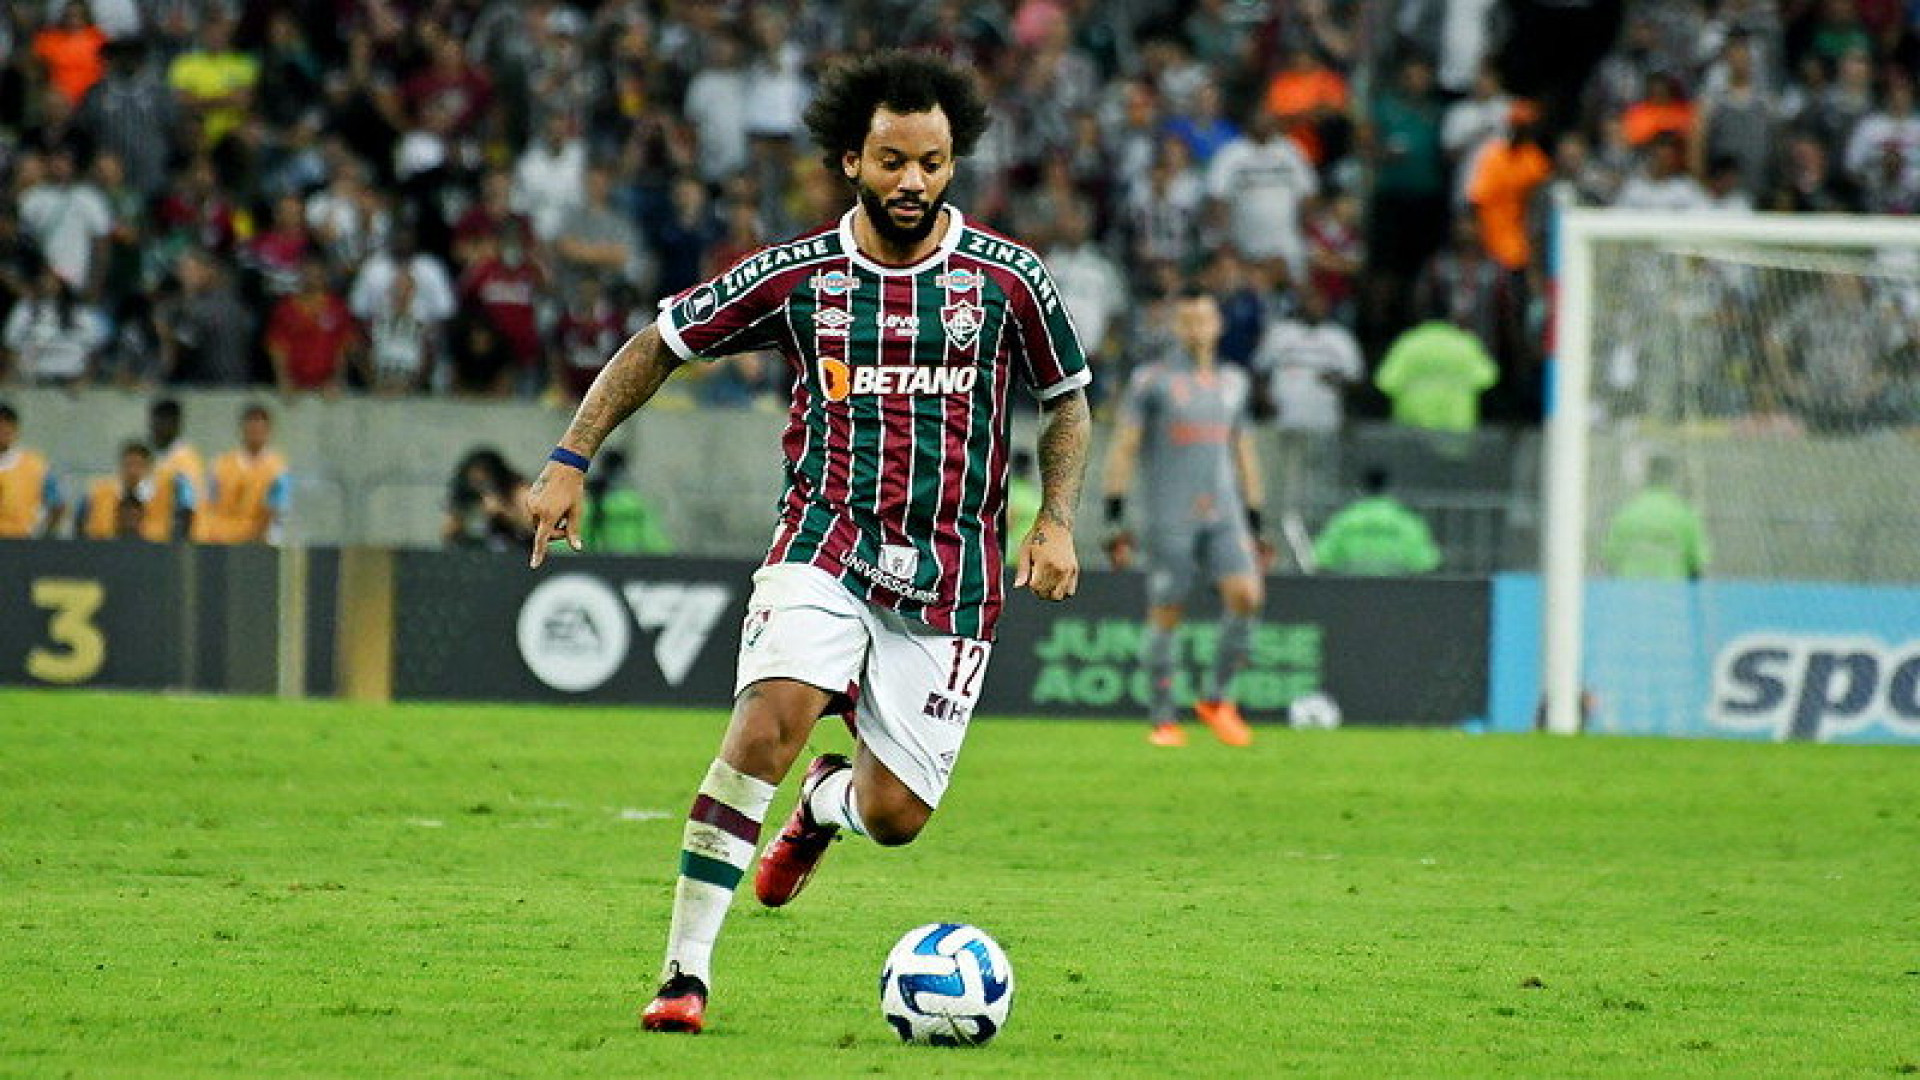 Marcelo NÃO vai jogar hoje? Fluminense na Libertadores